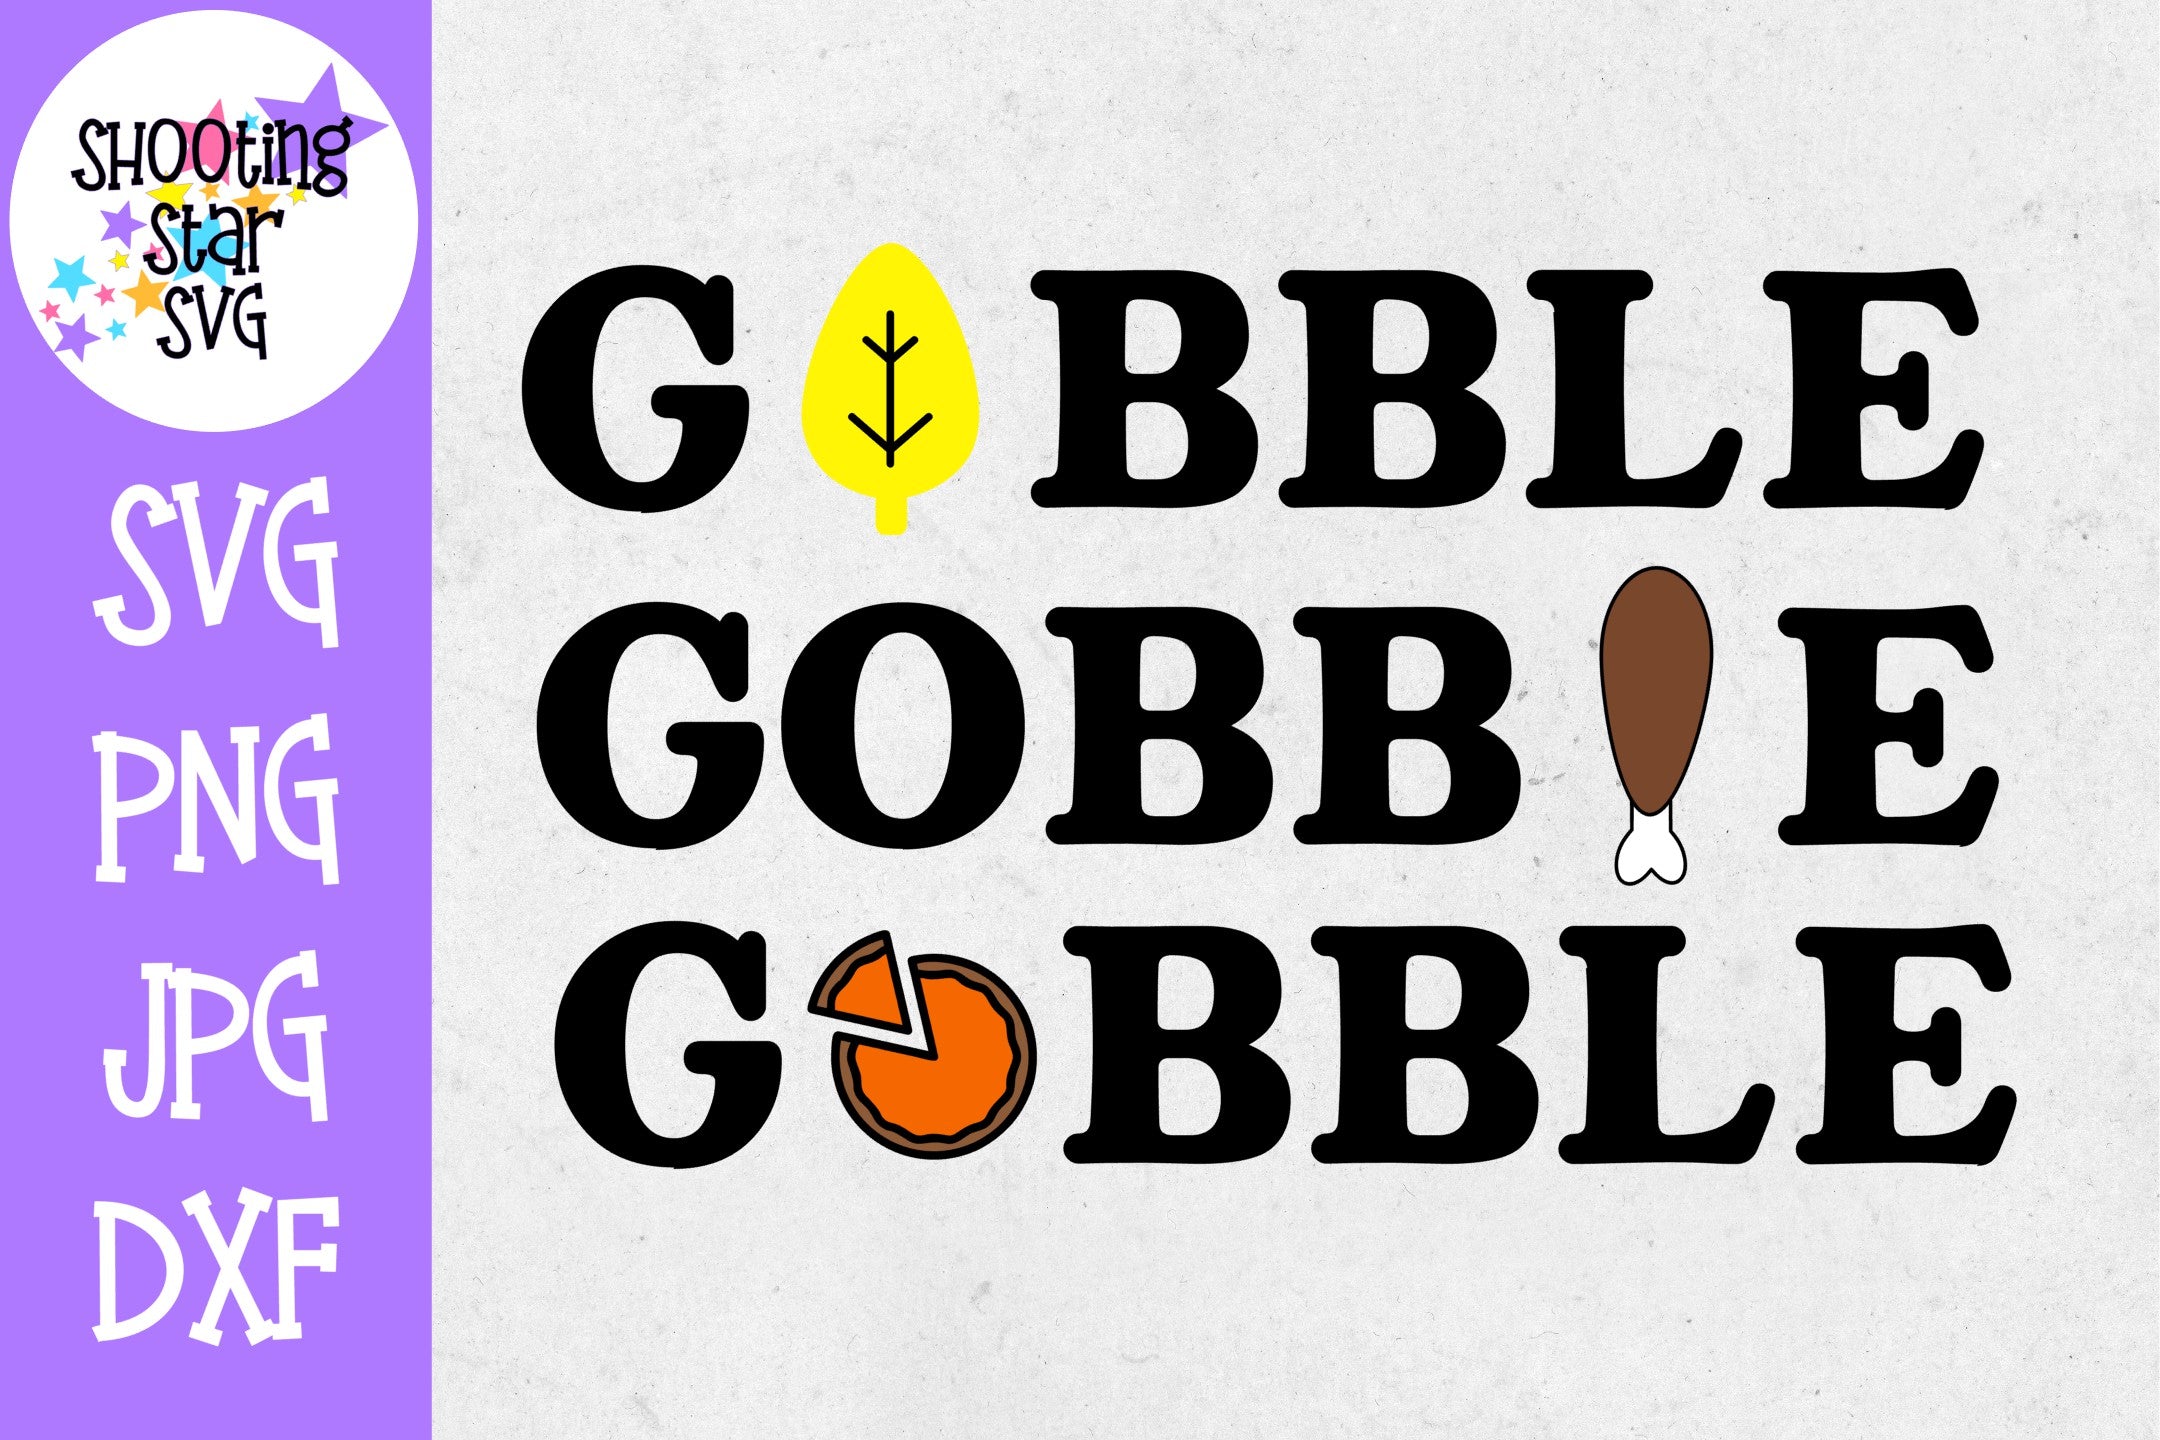 Gobble Gobble Gobble SVG - Turkey Leg SVG - Thanksgiving SVG